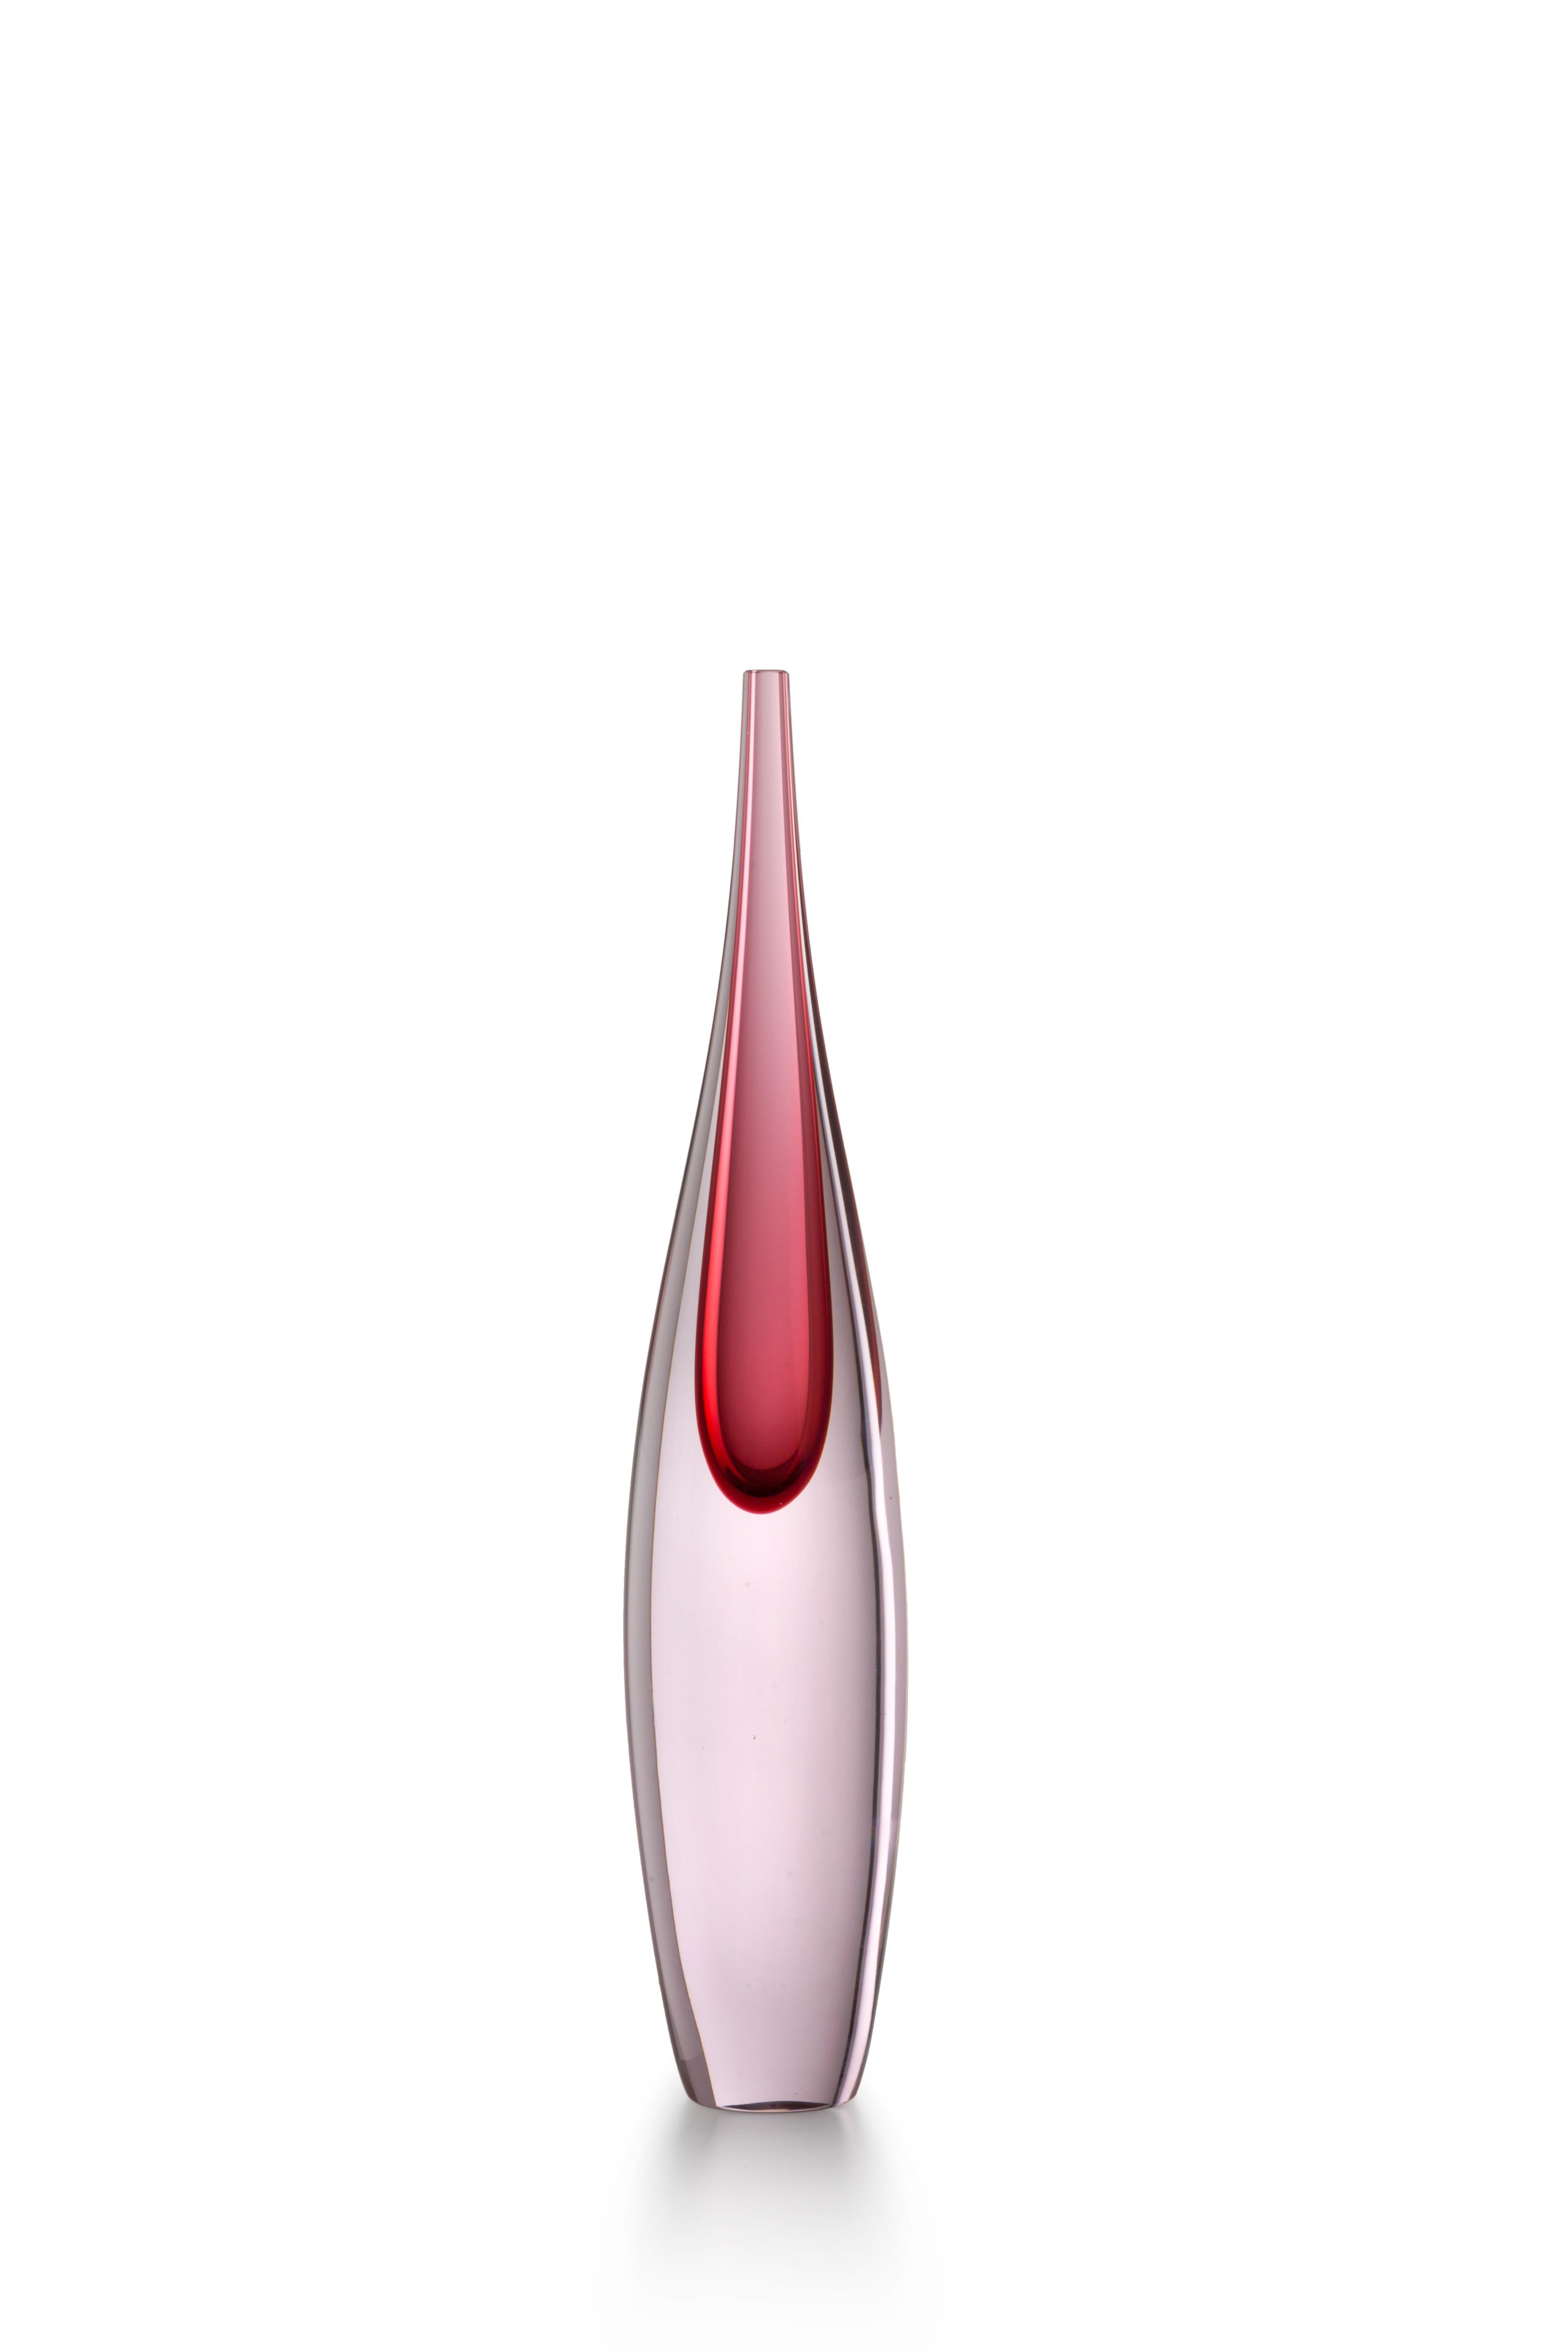 Red (01984) Small Pinnacoli Rosa Murano Glass Vase by Luciano Gaspari